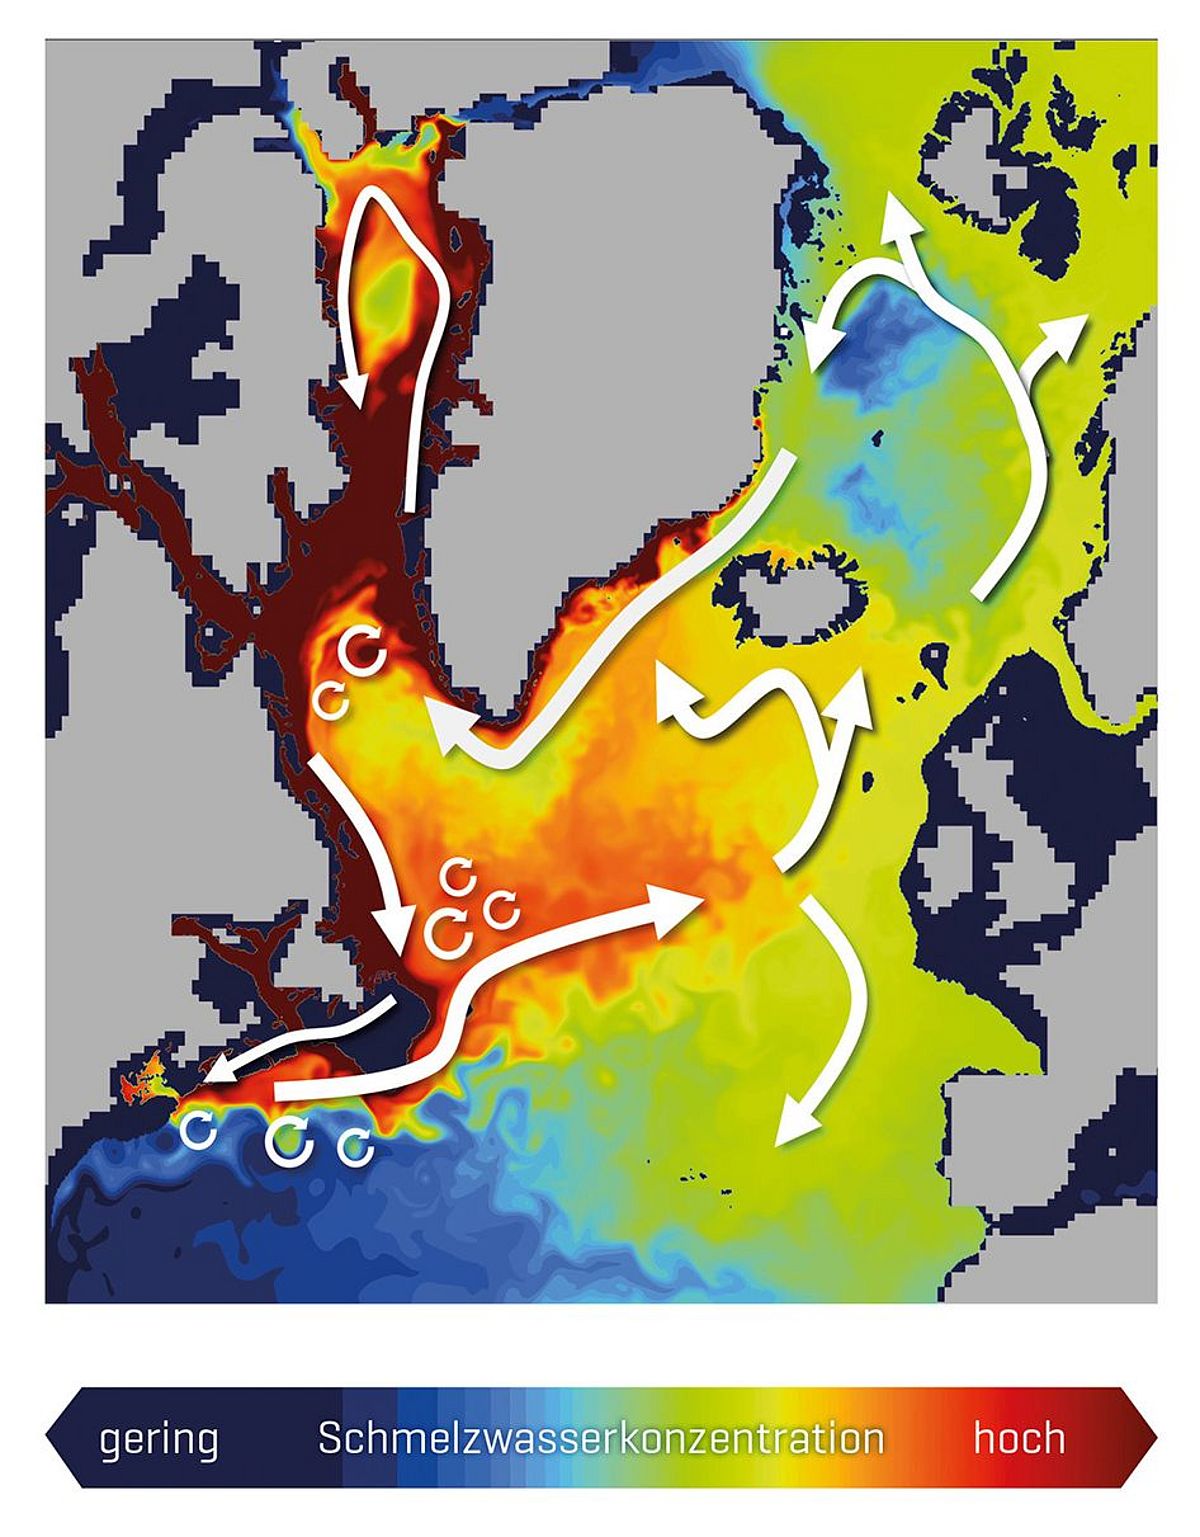 Konzentration (Farbschattierung) und Ausbreitungspfade (weiße Pfeile) grönländischen Schmelzwassers im oberen Ozean (hier bis 200 Meter Tiefe) im hochauflösenden Klimamodell FOCI-VIKING10, das Ozeanwirbel explizit simuliert. Modellierung und Visualisierung: Torge Martin / GEOMAR 